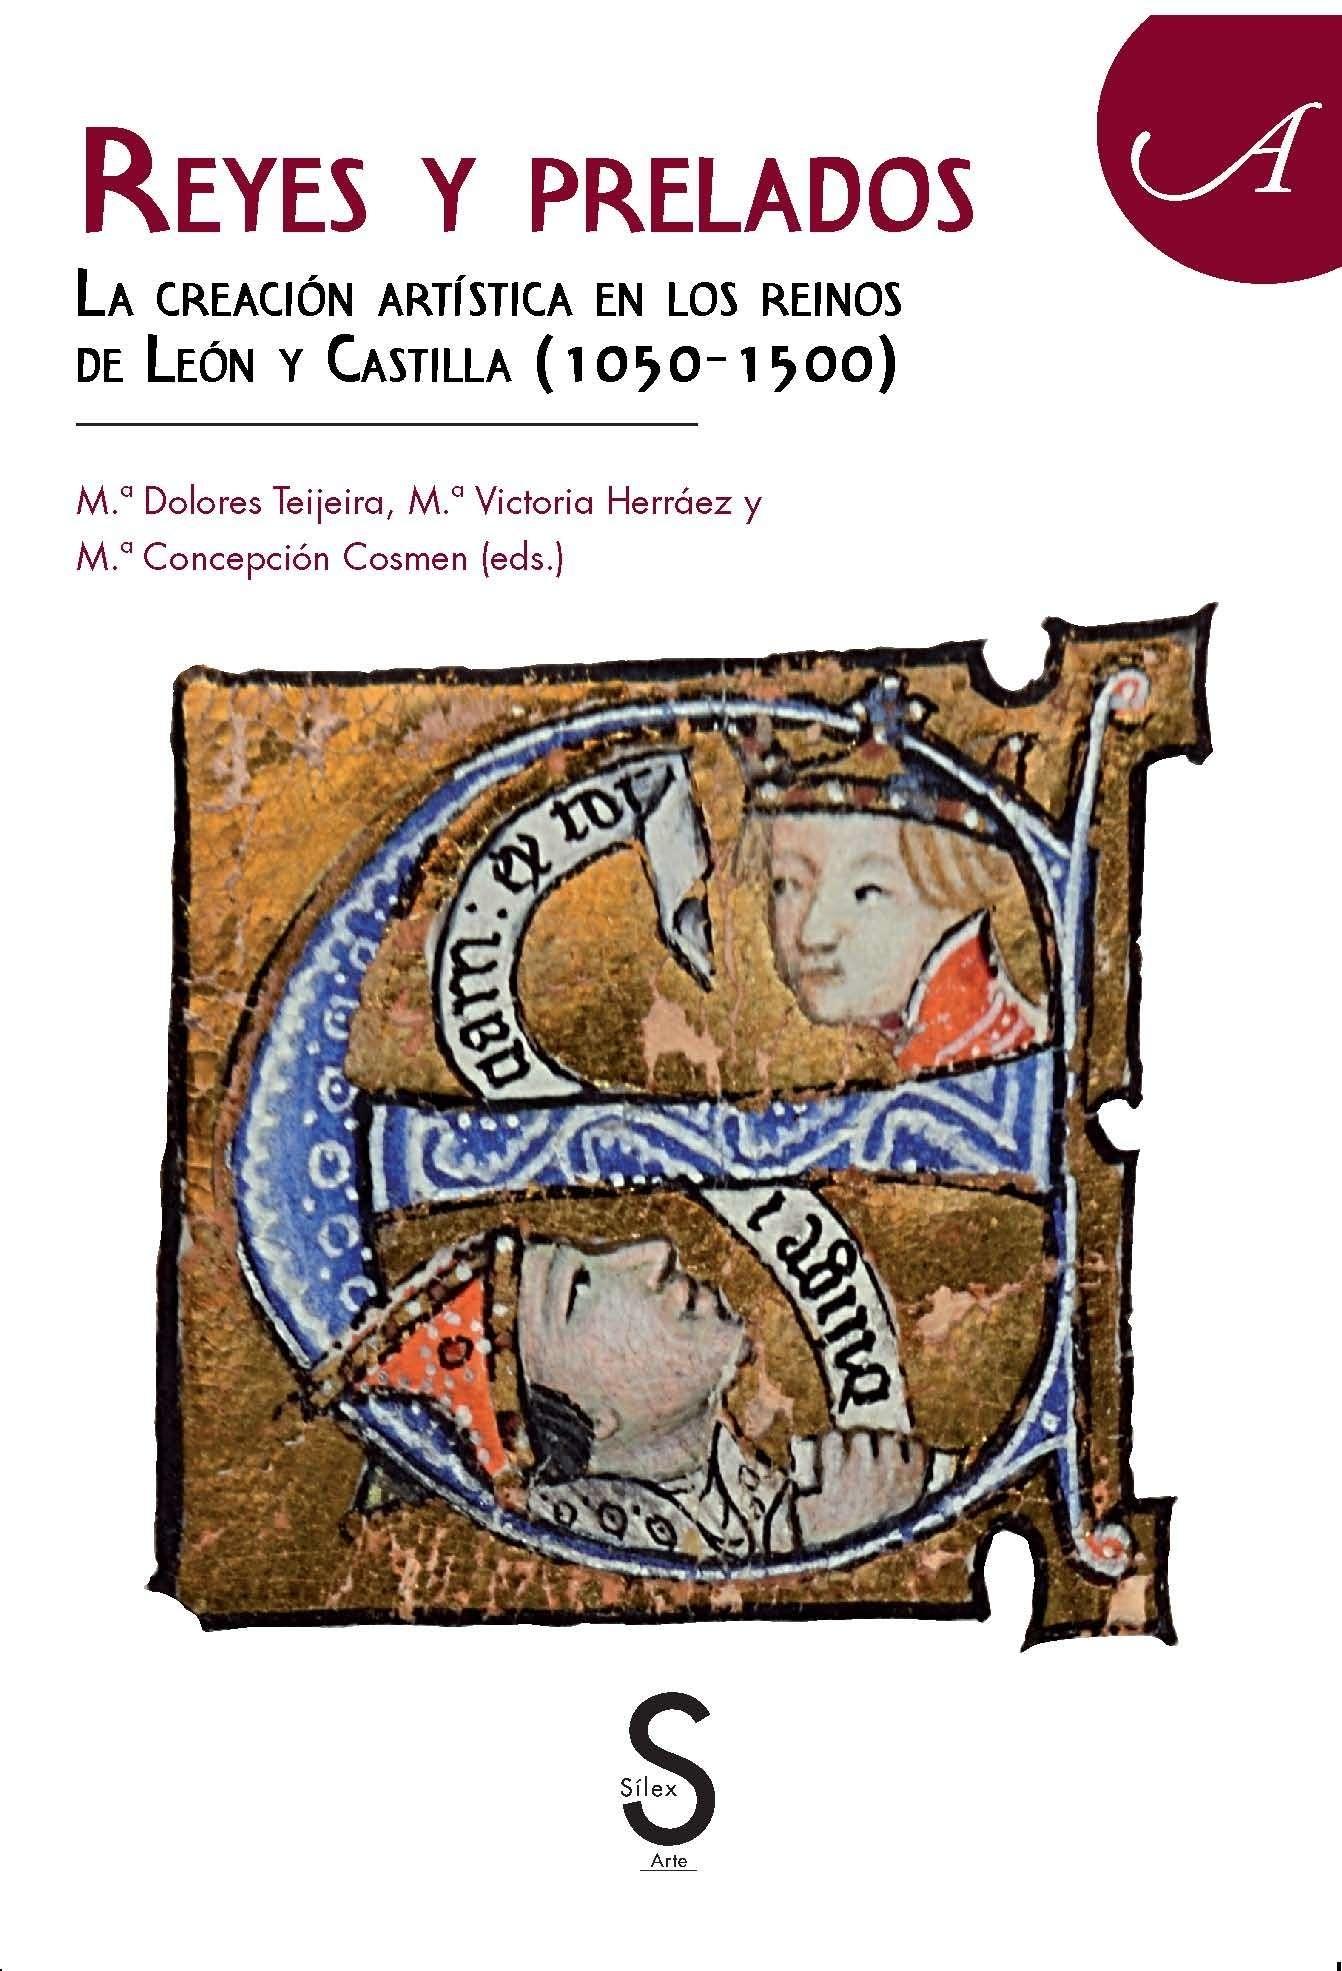 REYES Y PRELADOS. " LA CREACION ARTISTIC A EN LOS REINOS DE LEON Y CASTILLA ( 1050-1500). 